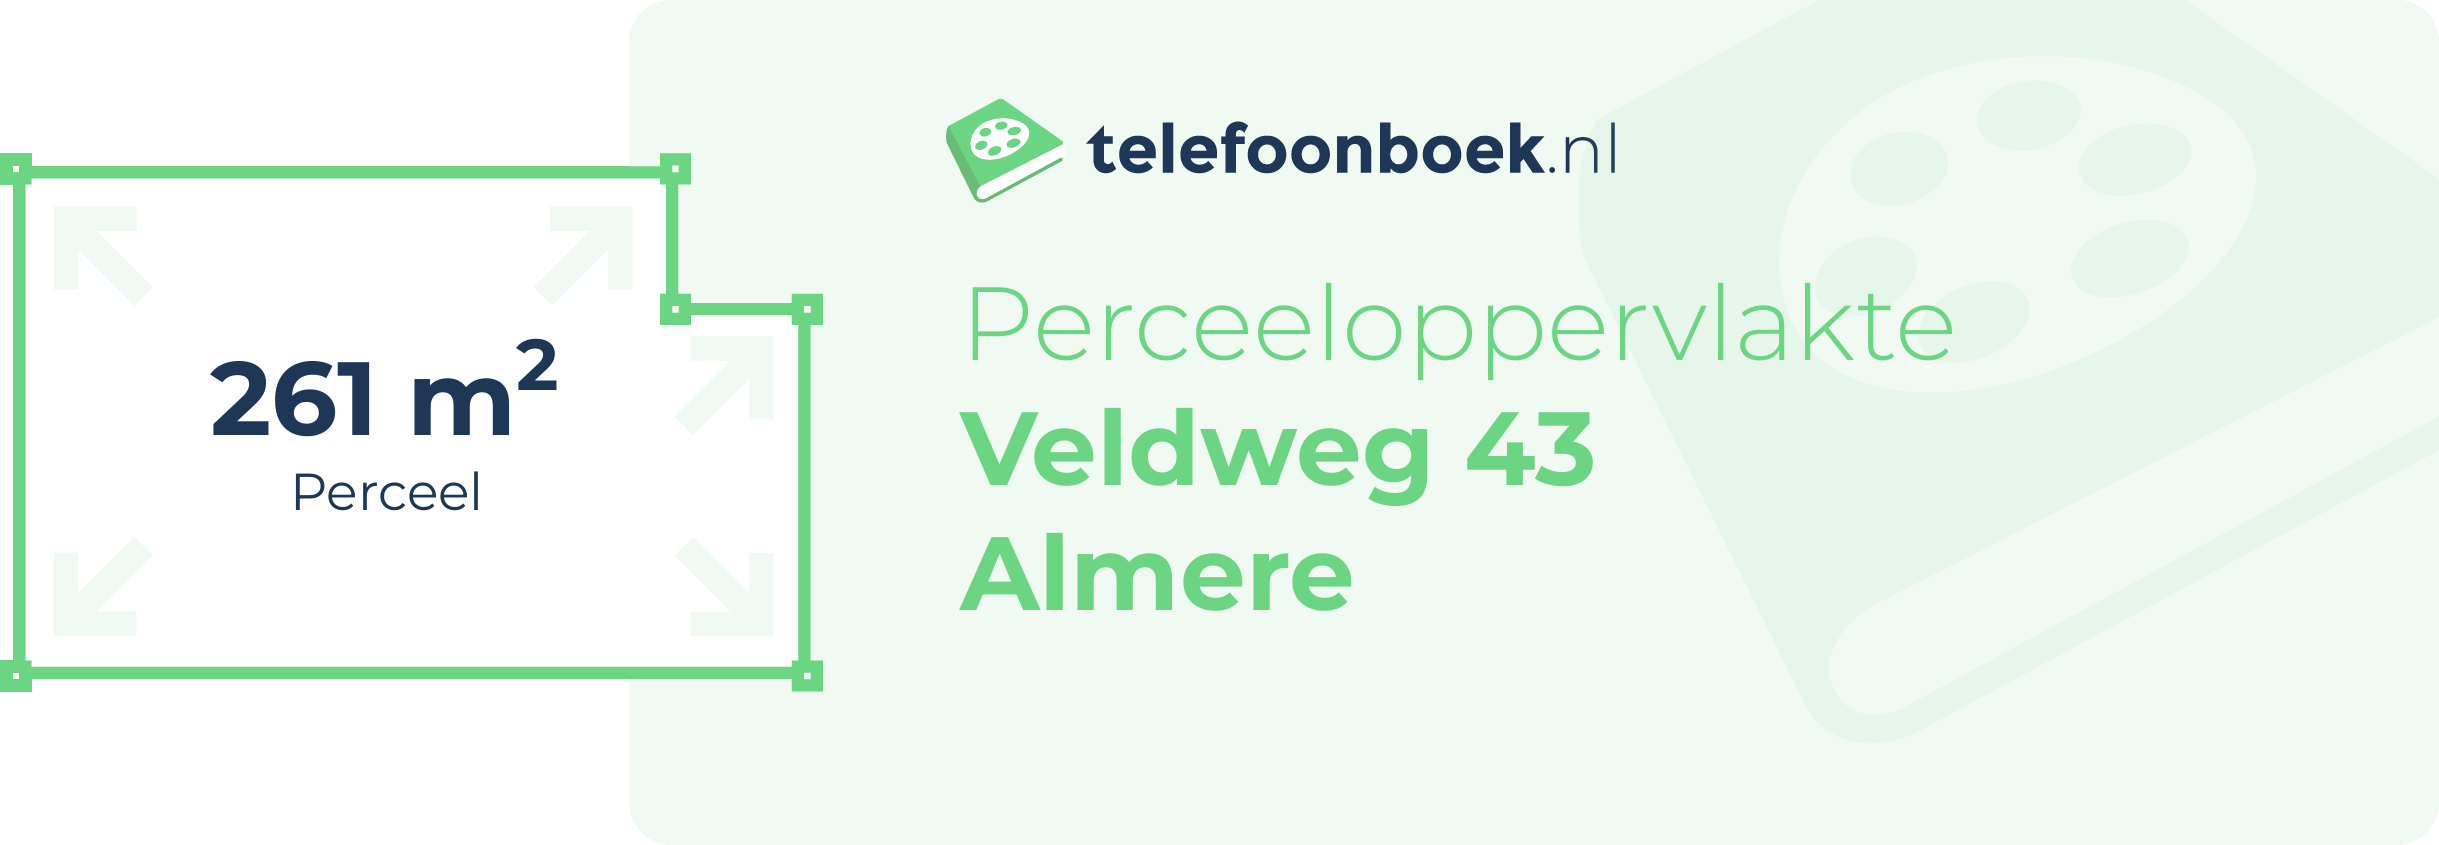 Perceeloppervlakte Veldweg 43 Almere